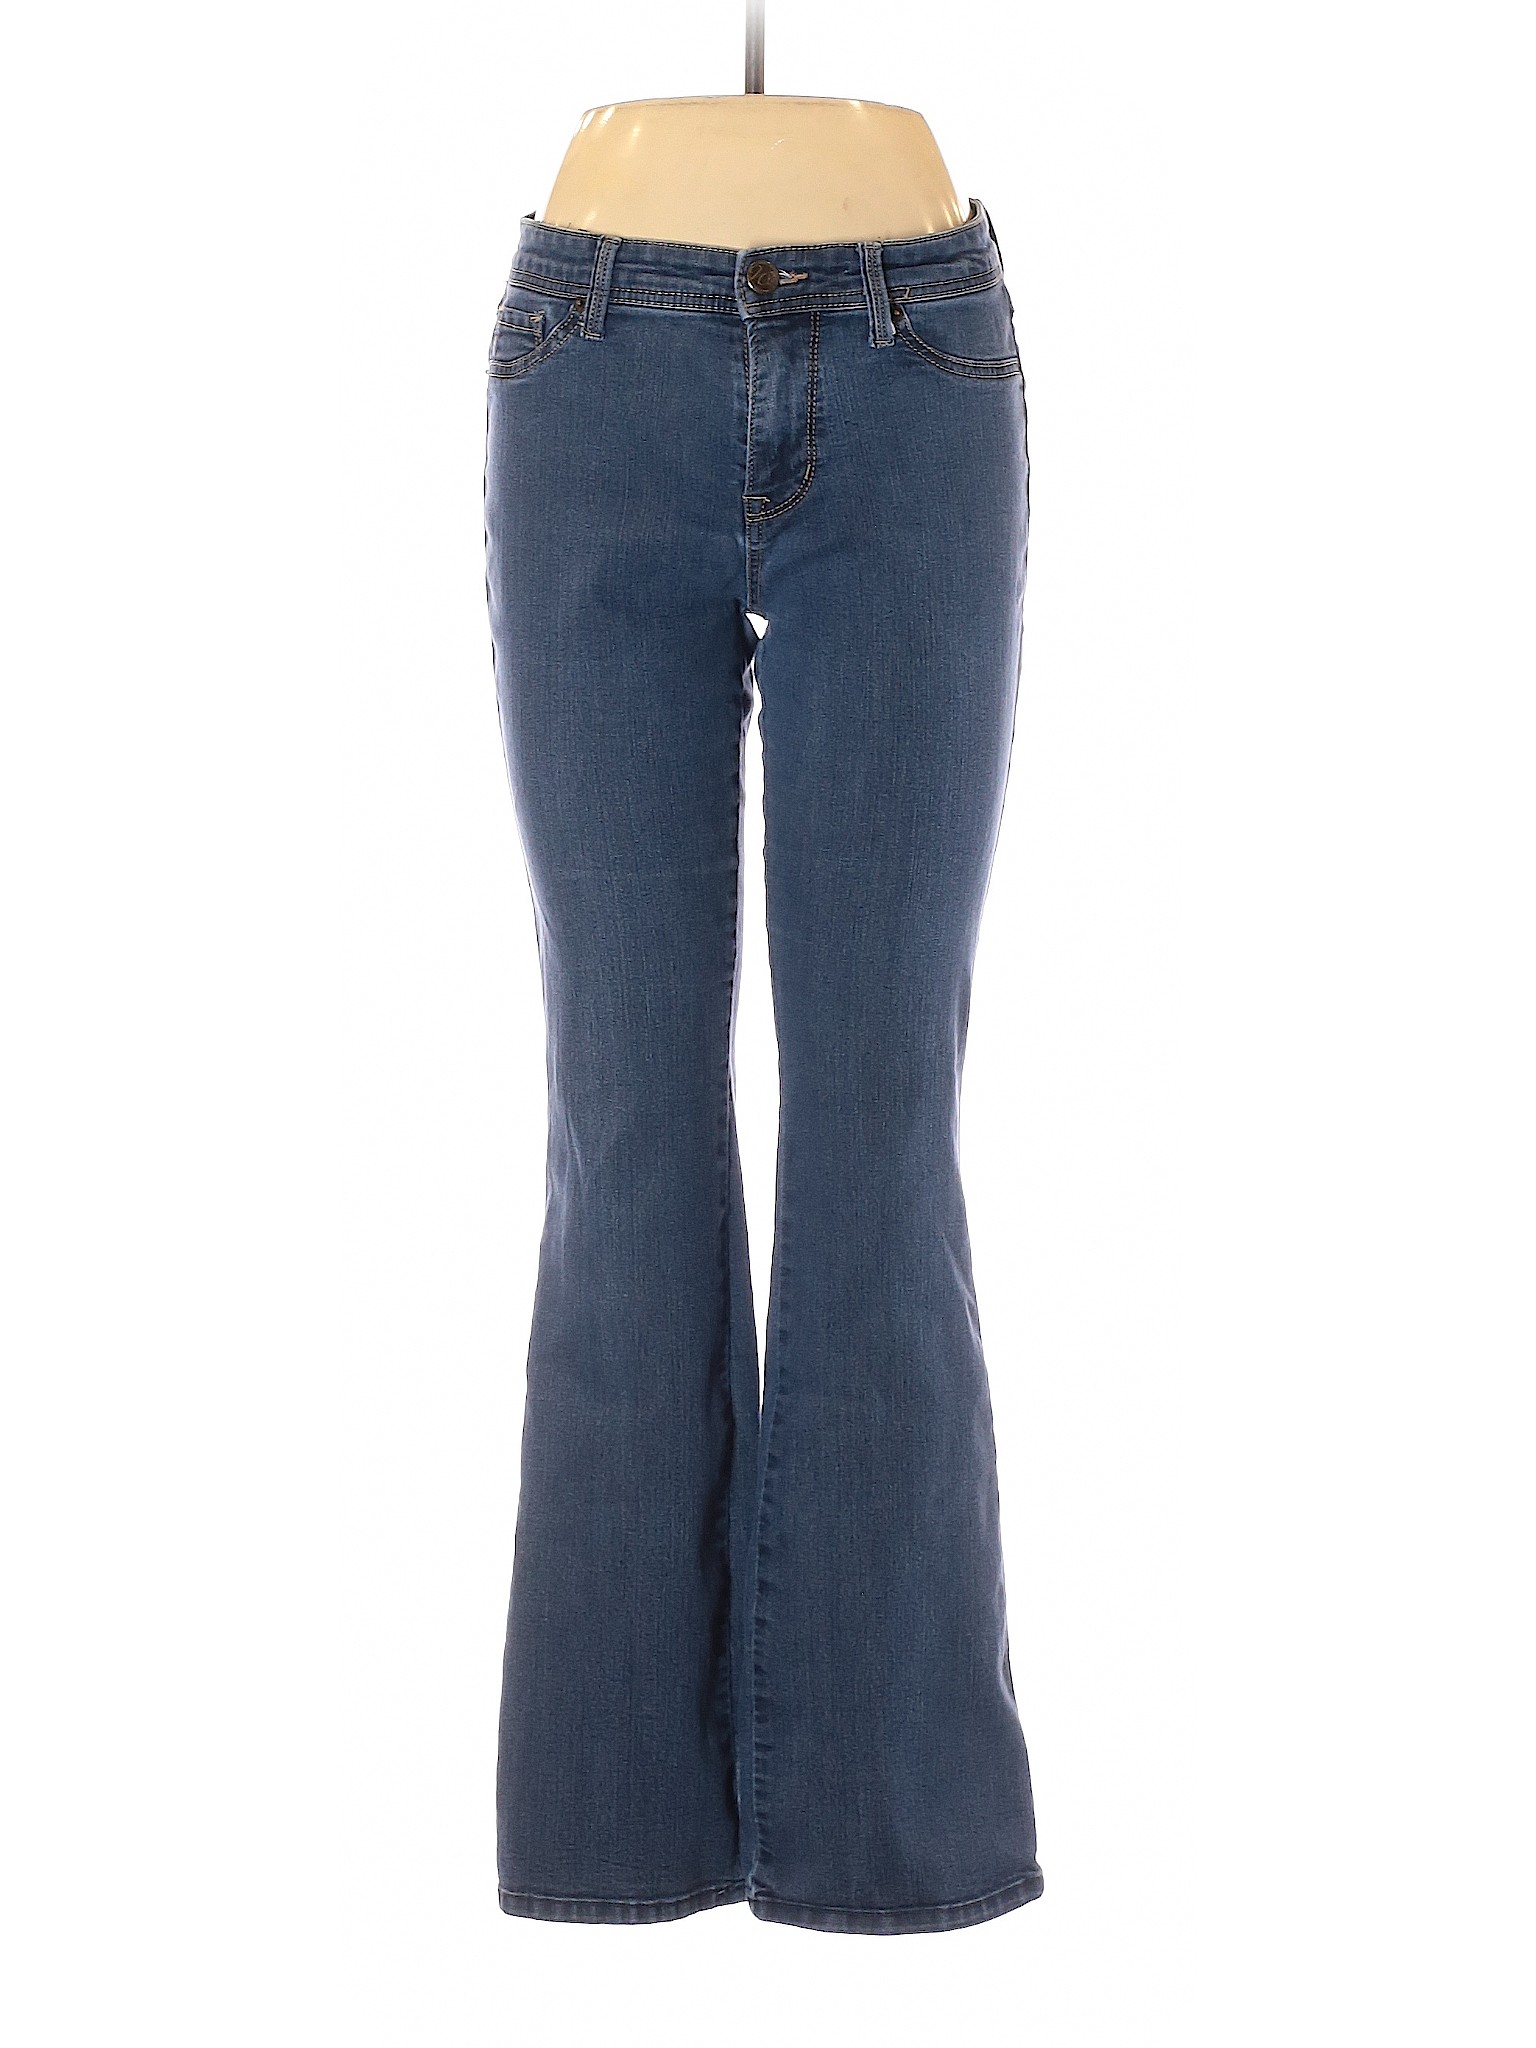 Westport 1962 Women Blue Jeans 8 | eBay